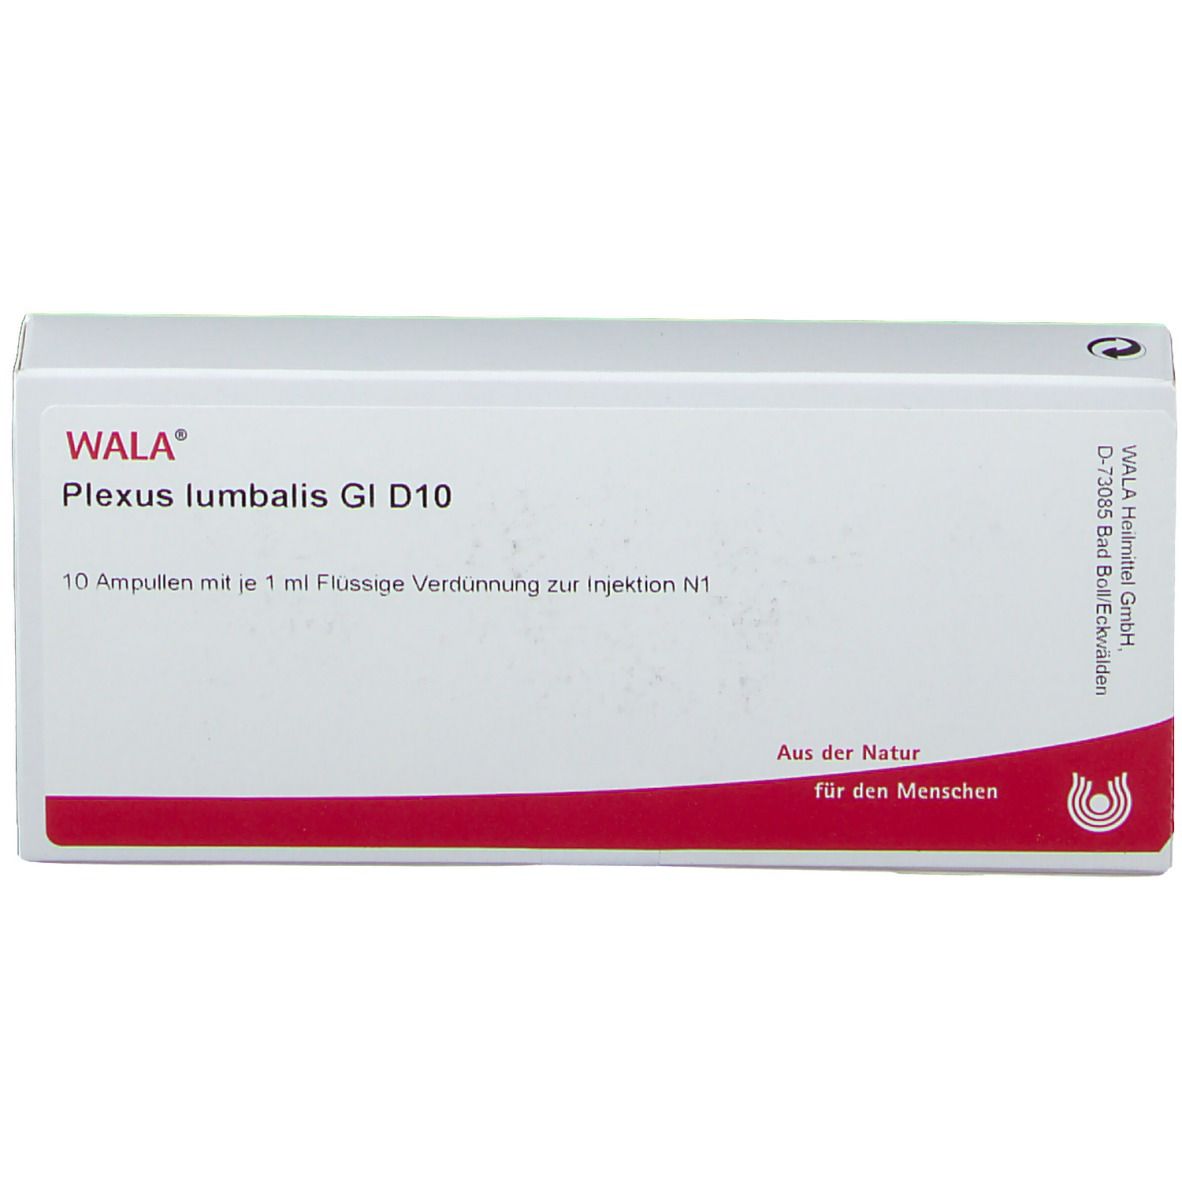 WALA® Plexus lumbalis Gl D 10